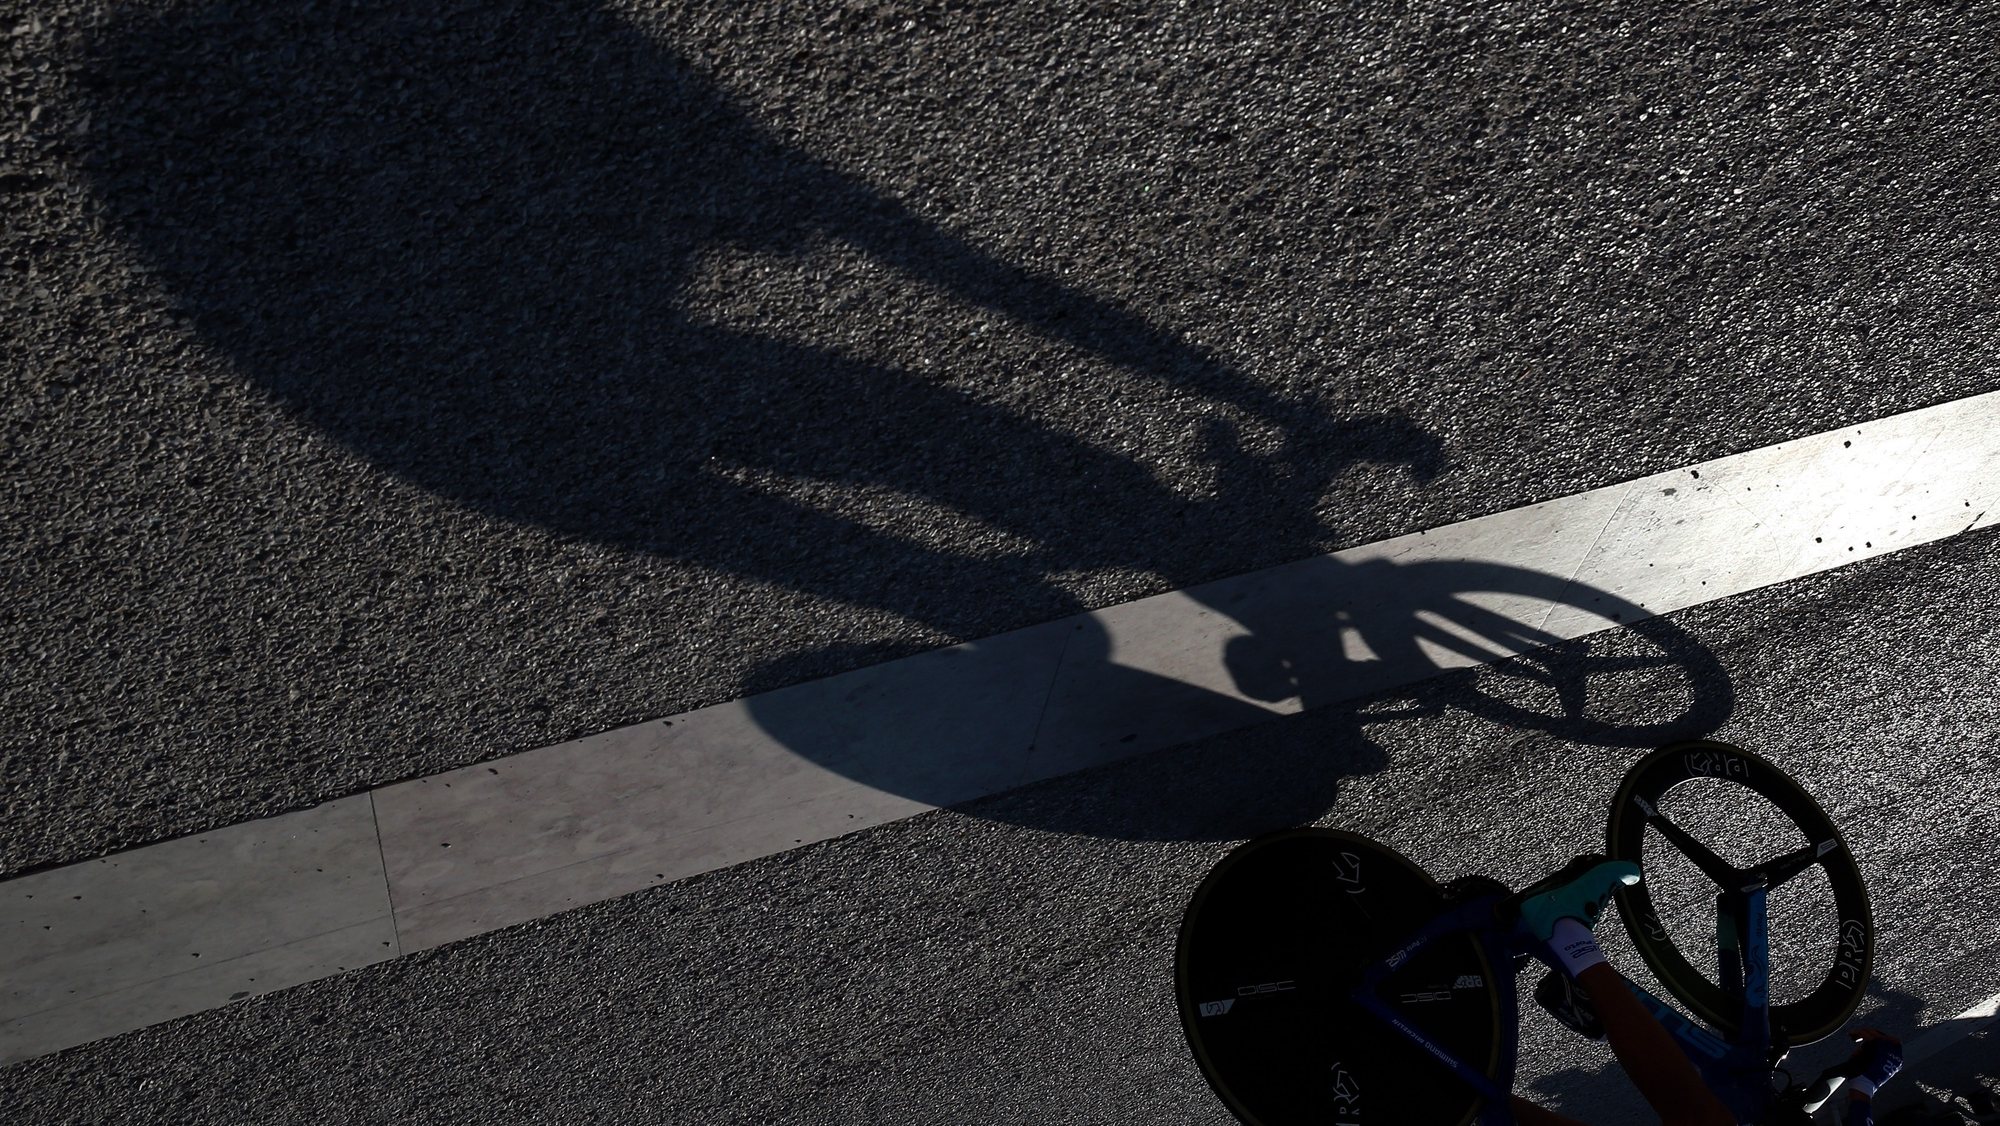 Sombra do ciclista, Gustavo Veloso da equipa W52 - FC Porto, durante a sua prova na 8ª etapa da edição especial da Volta a Portugal em Bicicleta num contrarrelógio individual de 17,7Km, disputado em Lisboa, 05 de outubro de 2020. NUNO VEIGA/LUSA